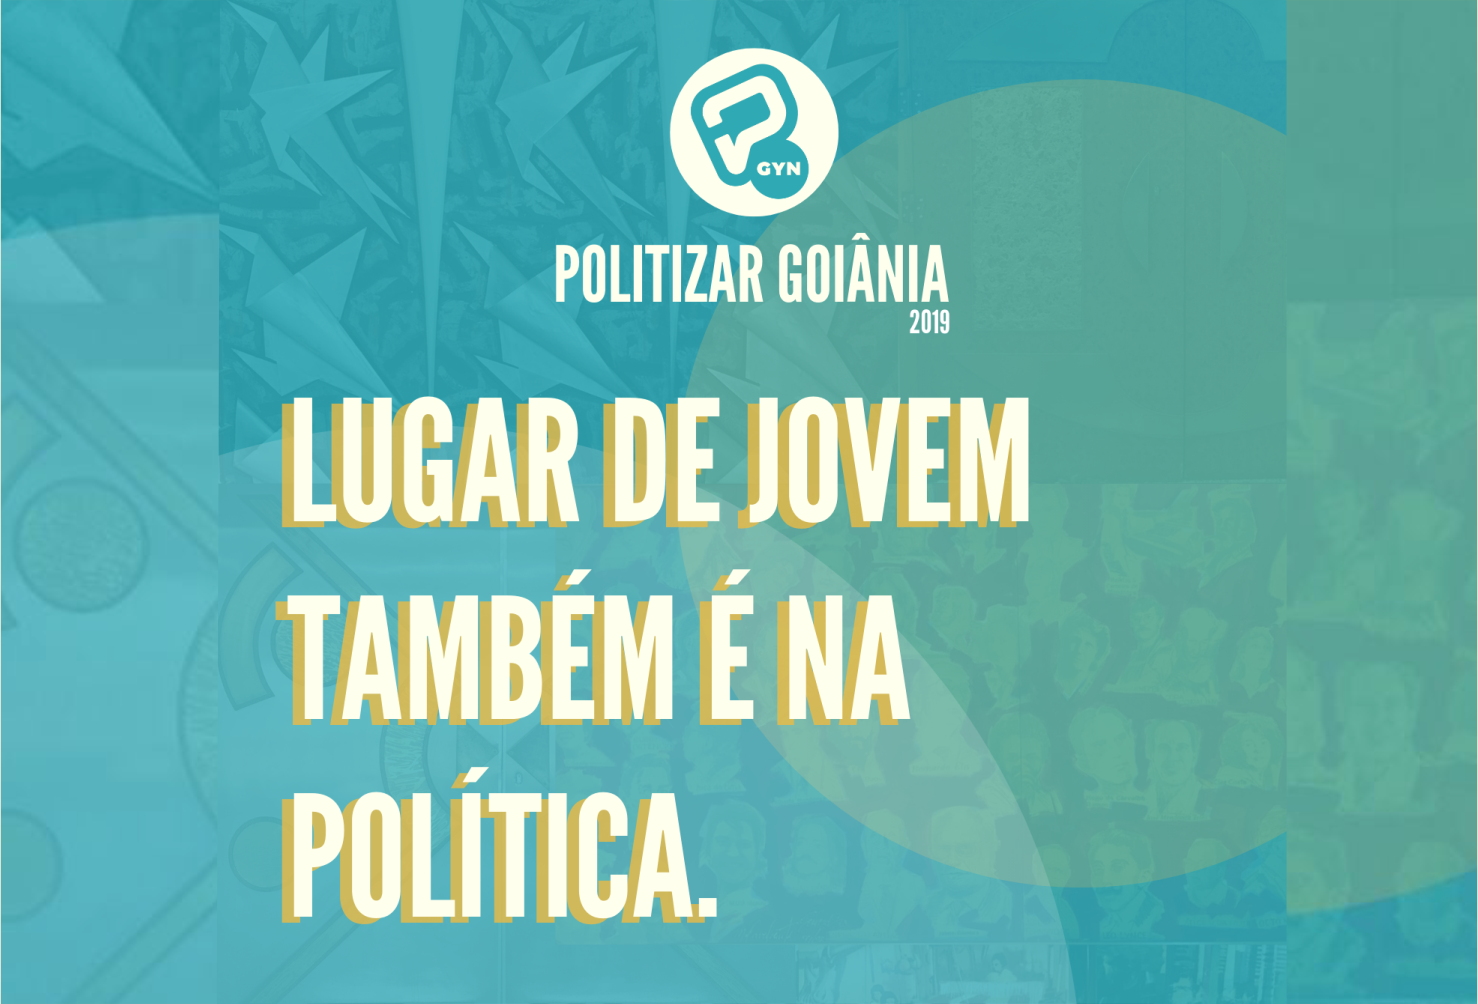 Projeto "Politizar Goiânia" selecionará 35 estudantes de 11 escolas de Goiânia que terão a oportunidade de simular uma atuação enquanto vereadores na Câmara Municipal de Goiânia